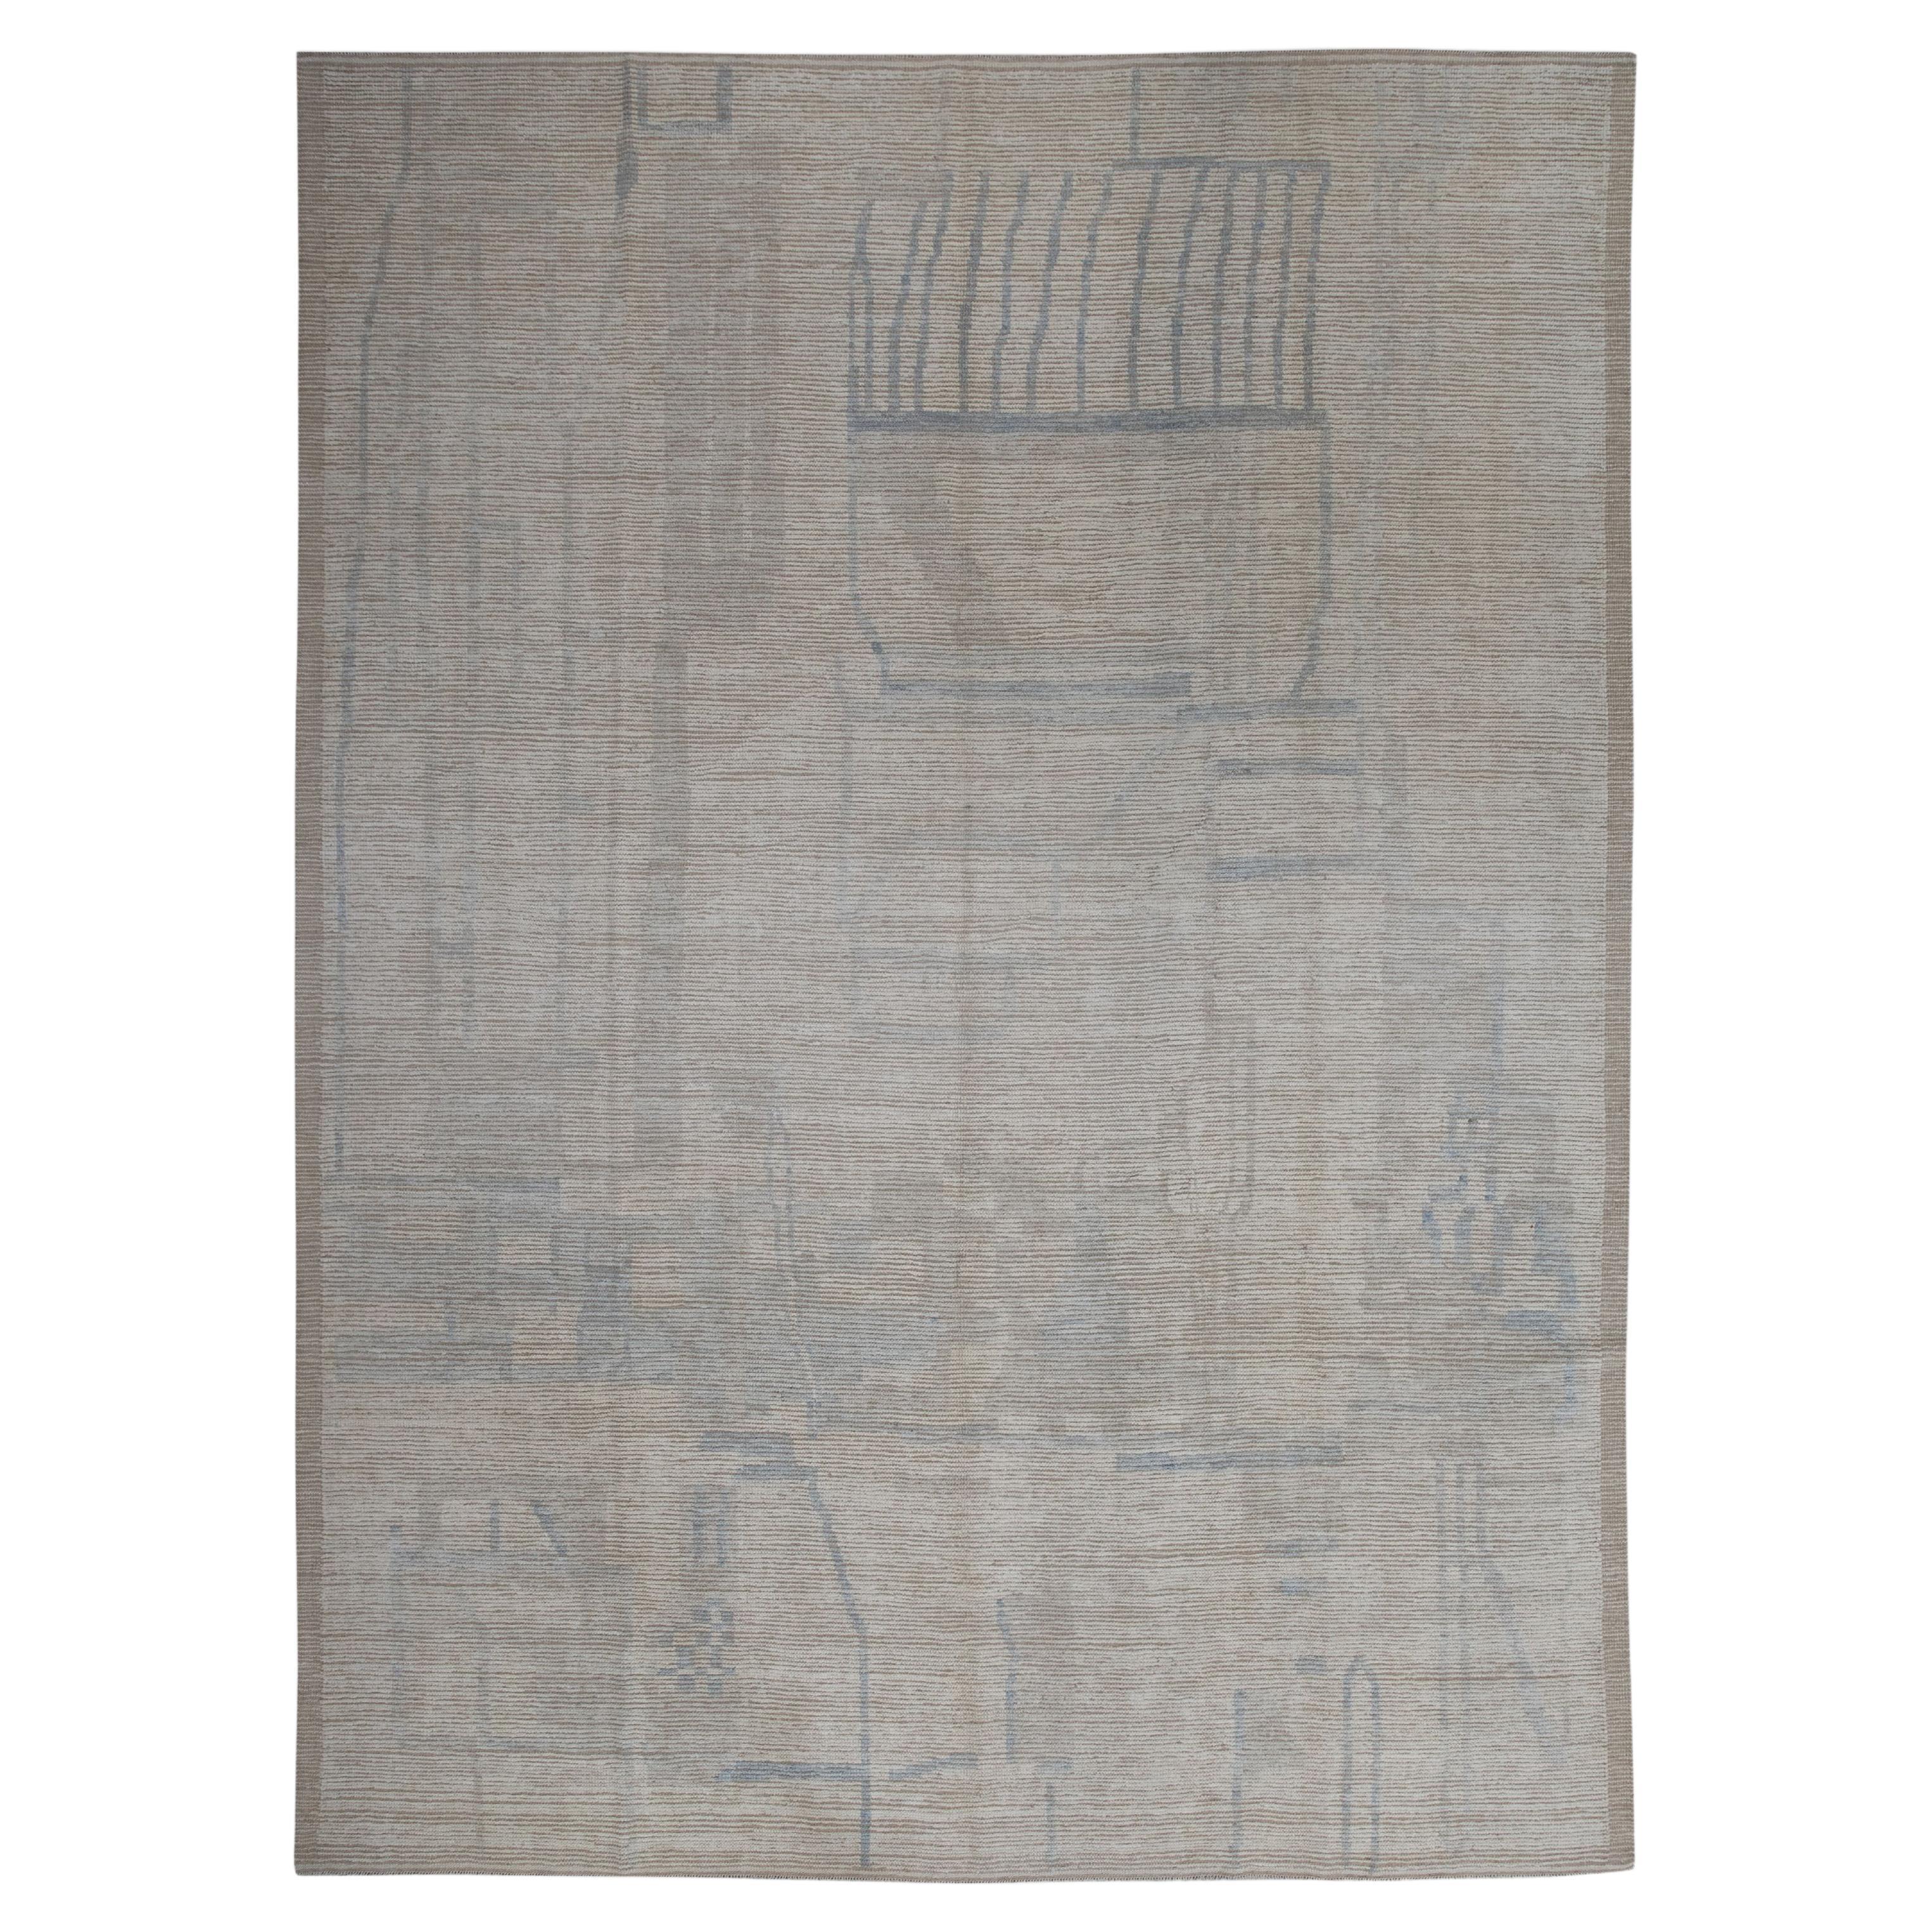  Handmade Wool Tulu Rug in Geometric Design 10'2" x 13'8"